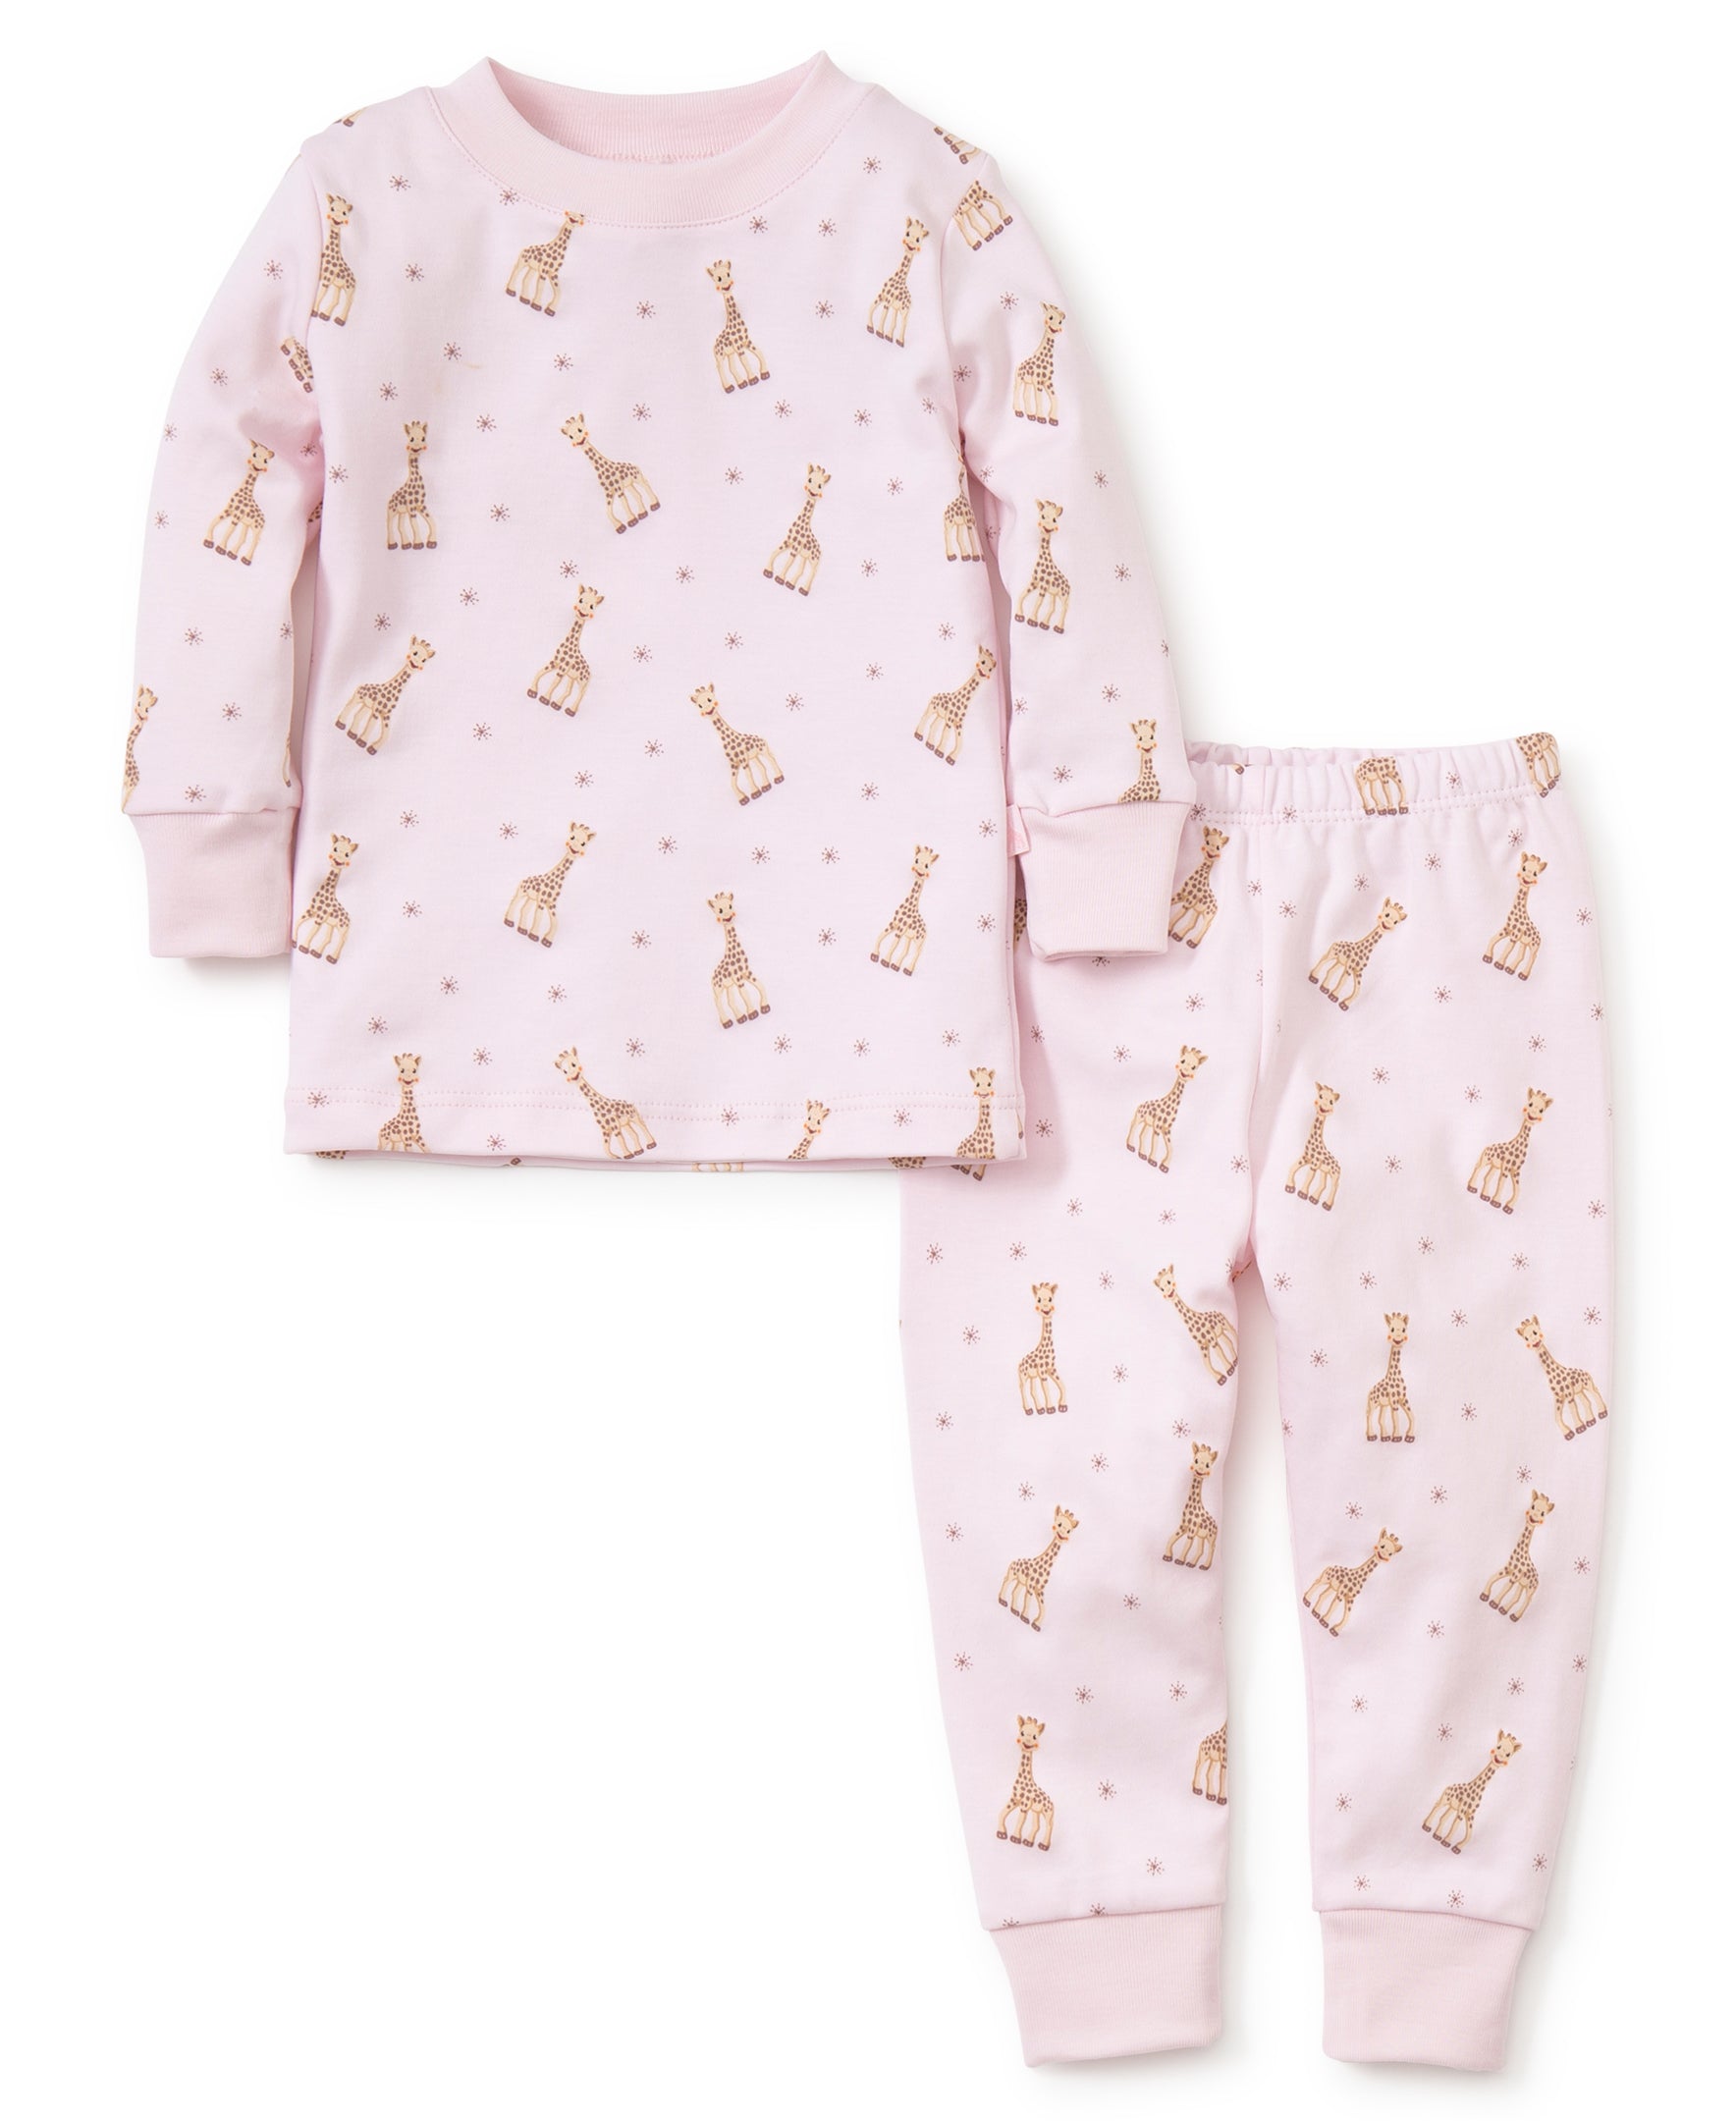 Sophie la girafe Pink Print Pajamas - Kissy Kissy